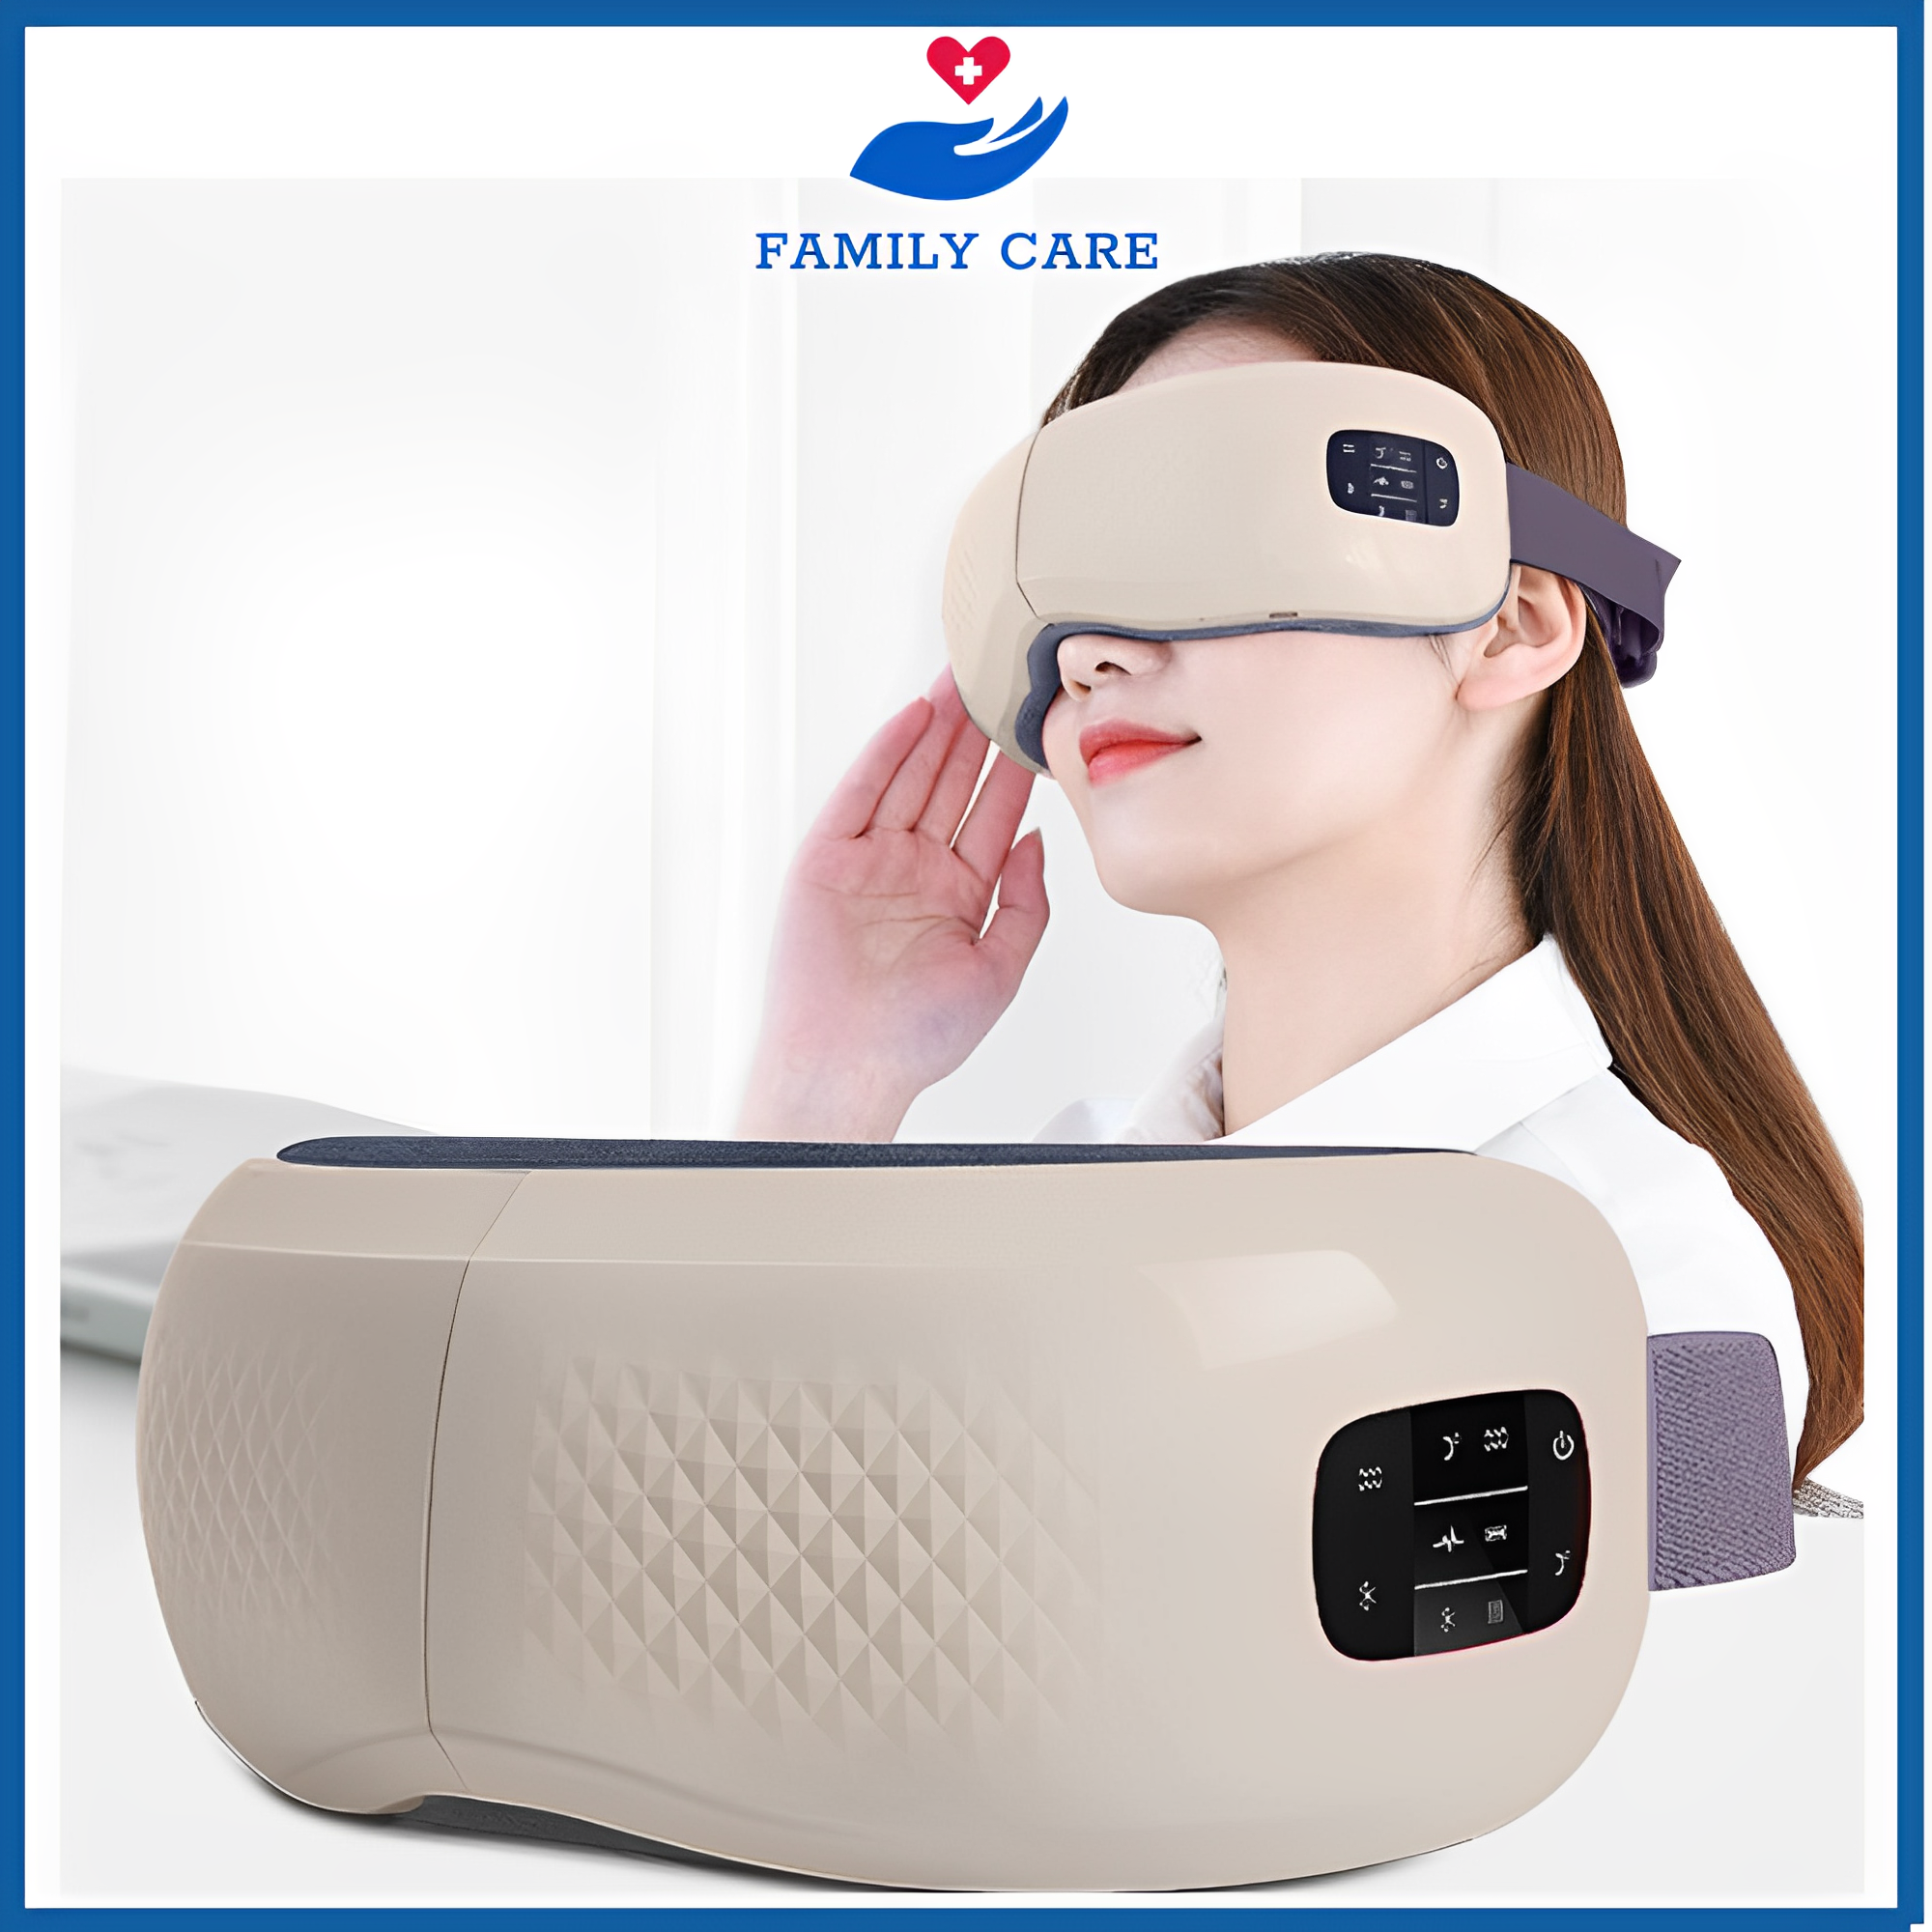 Máy massage mắt , máy mátxa mắt giảm cuồng thâm,bọng mắt, đau mắt loại dùng pin HY-01 cao cấp,máy masage mắt với các chế độ bóp khí,rung và nhiệt kết hợp bluetooth nghe nhạc